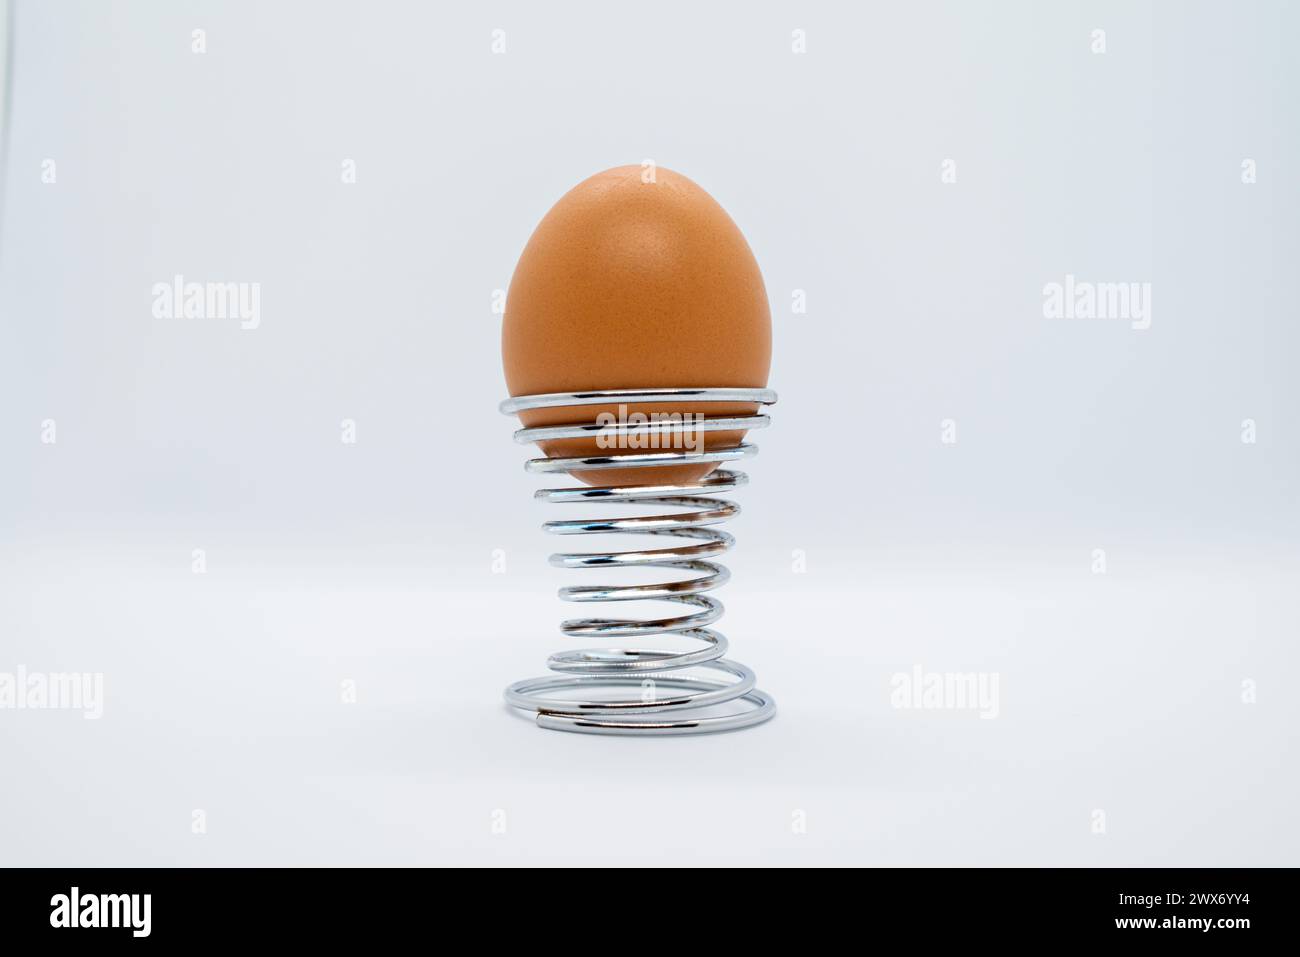 Un seul œuf biologique occupe le devant de la scène sur un fond blanc immaculé, incarnant l'essence culinaire de la fraîcheur et de la simplicité. Banque D'Images